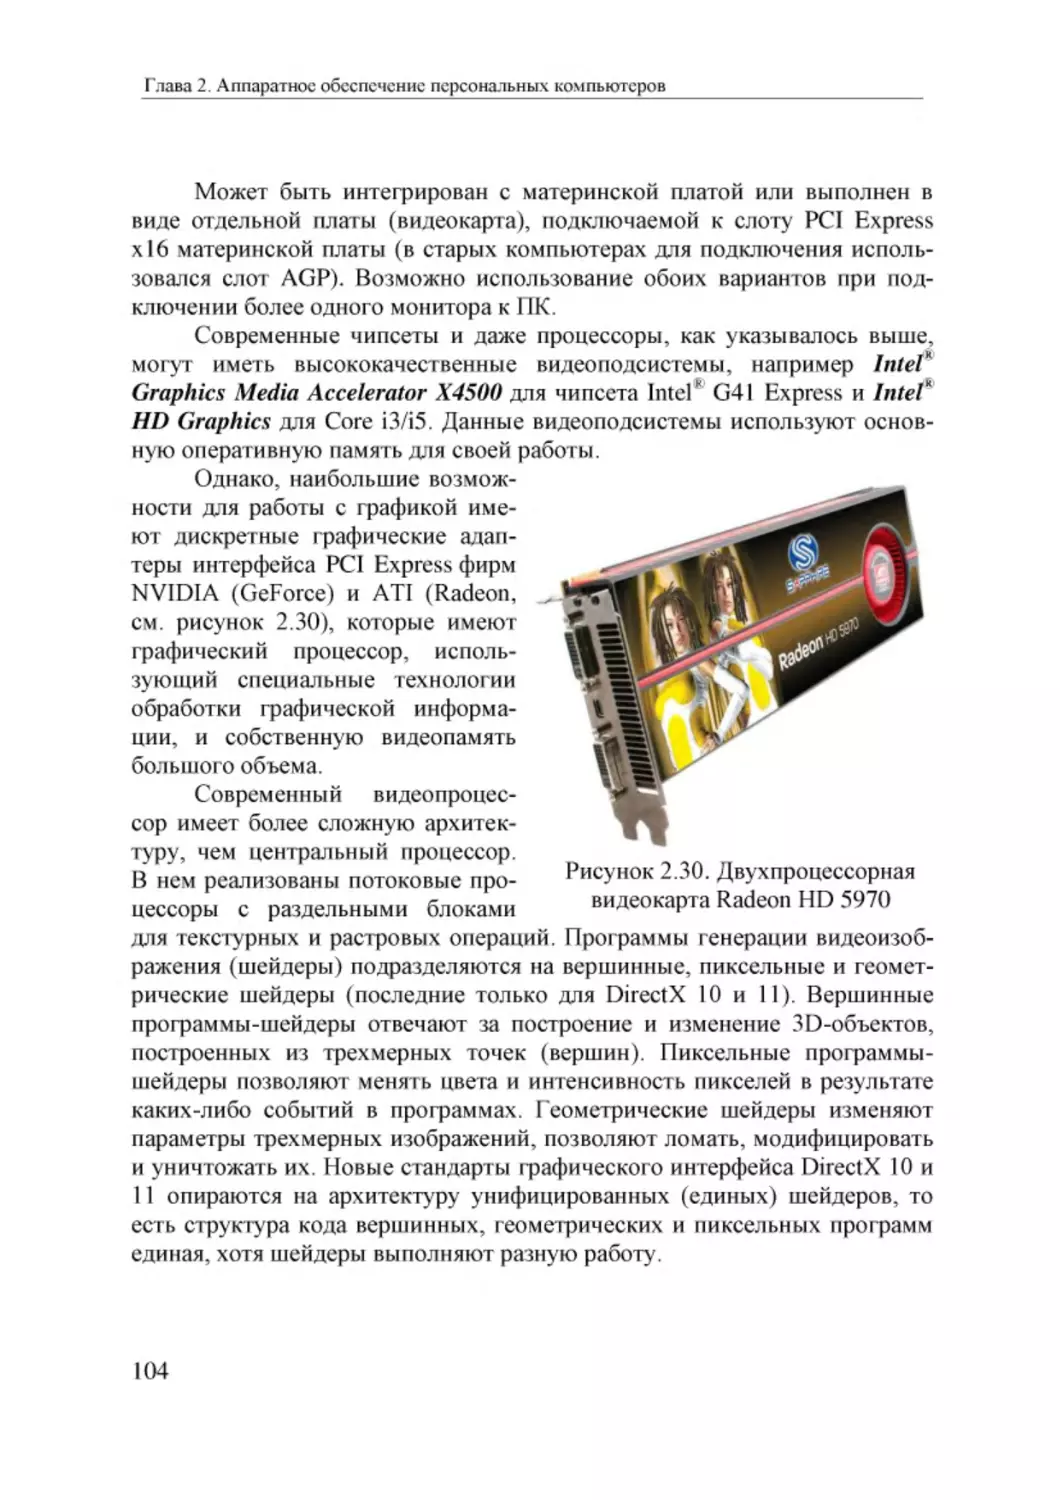 Informatika_Uchebnik_dlya_vuzov_2010 104